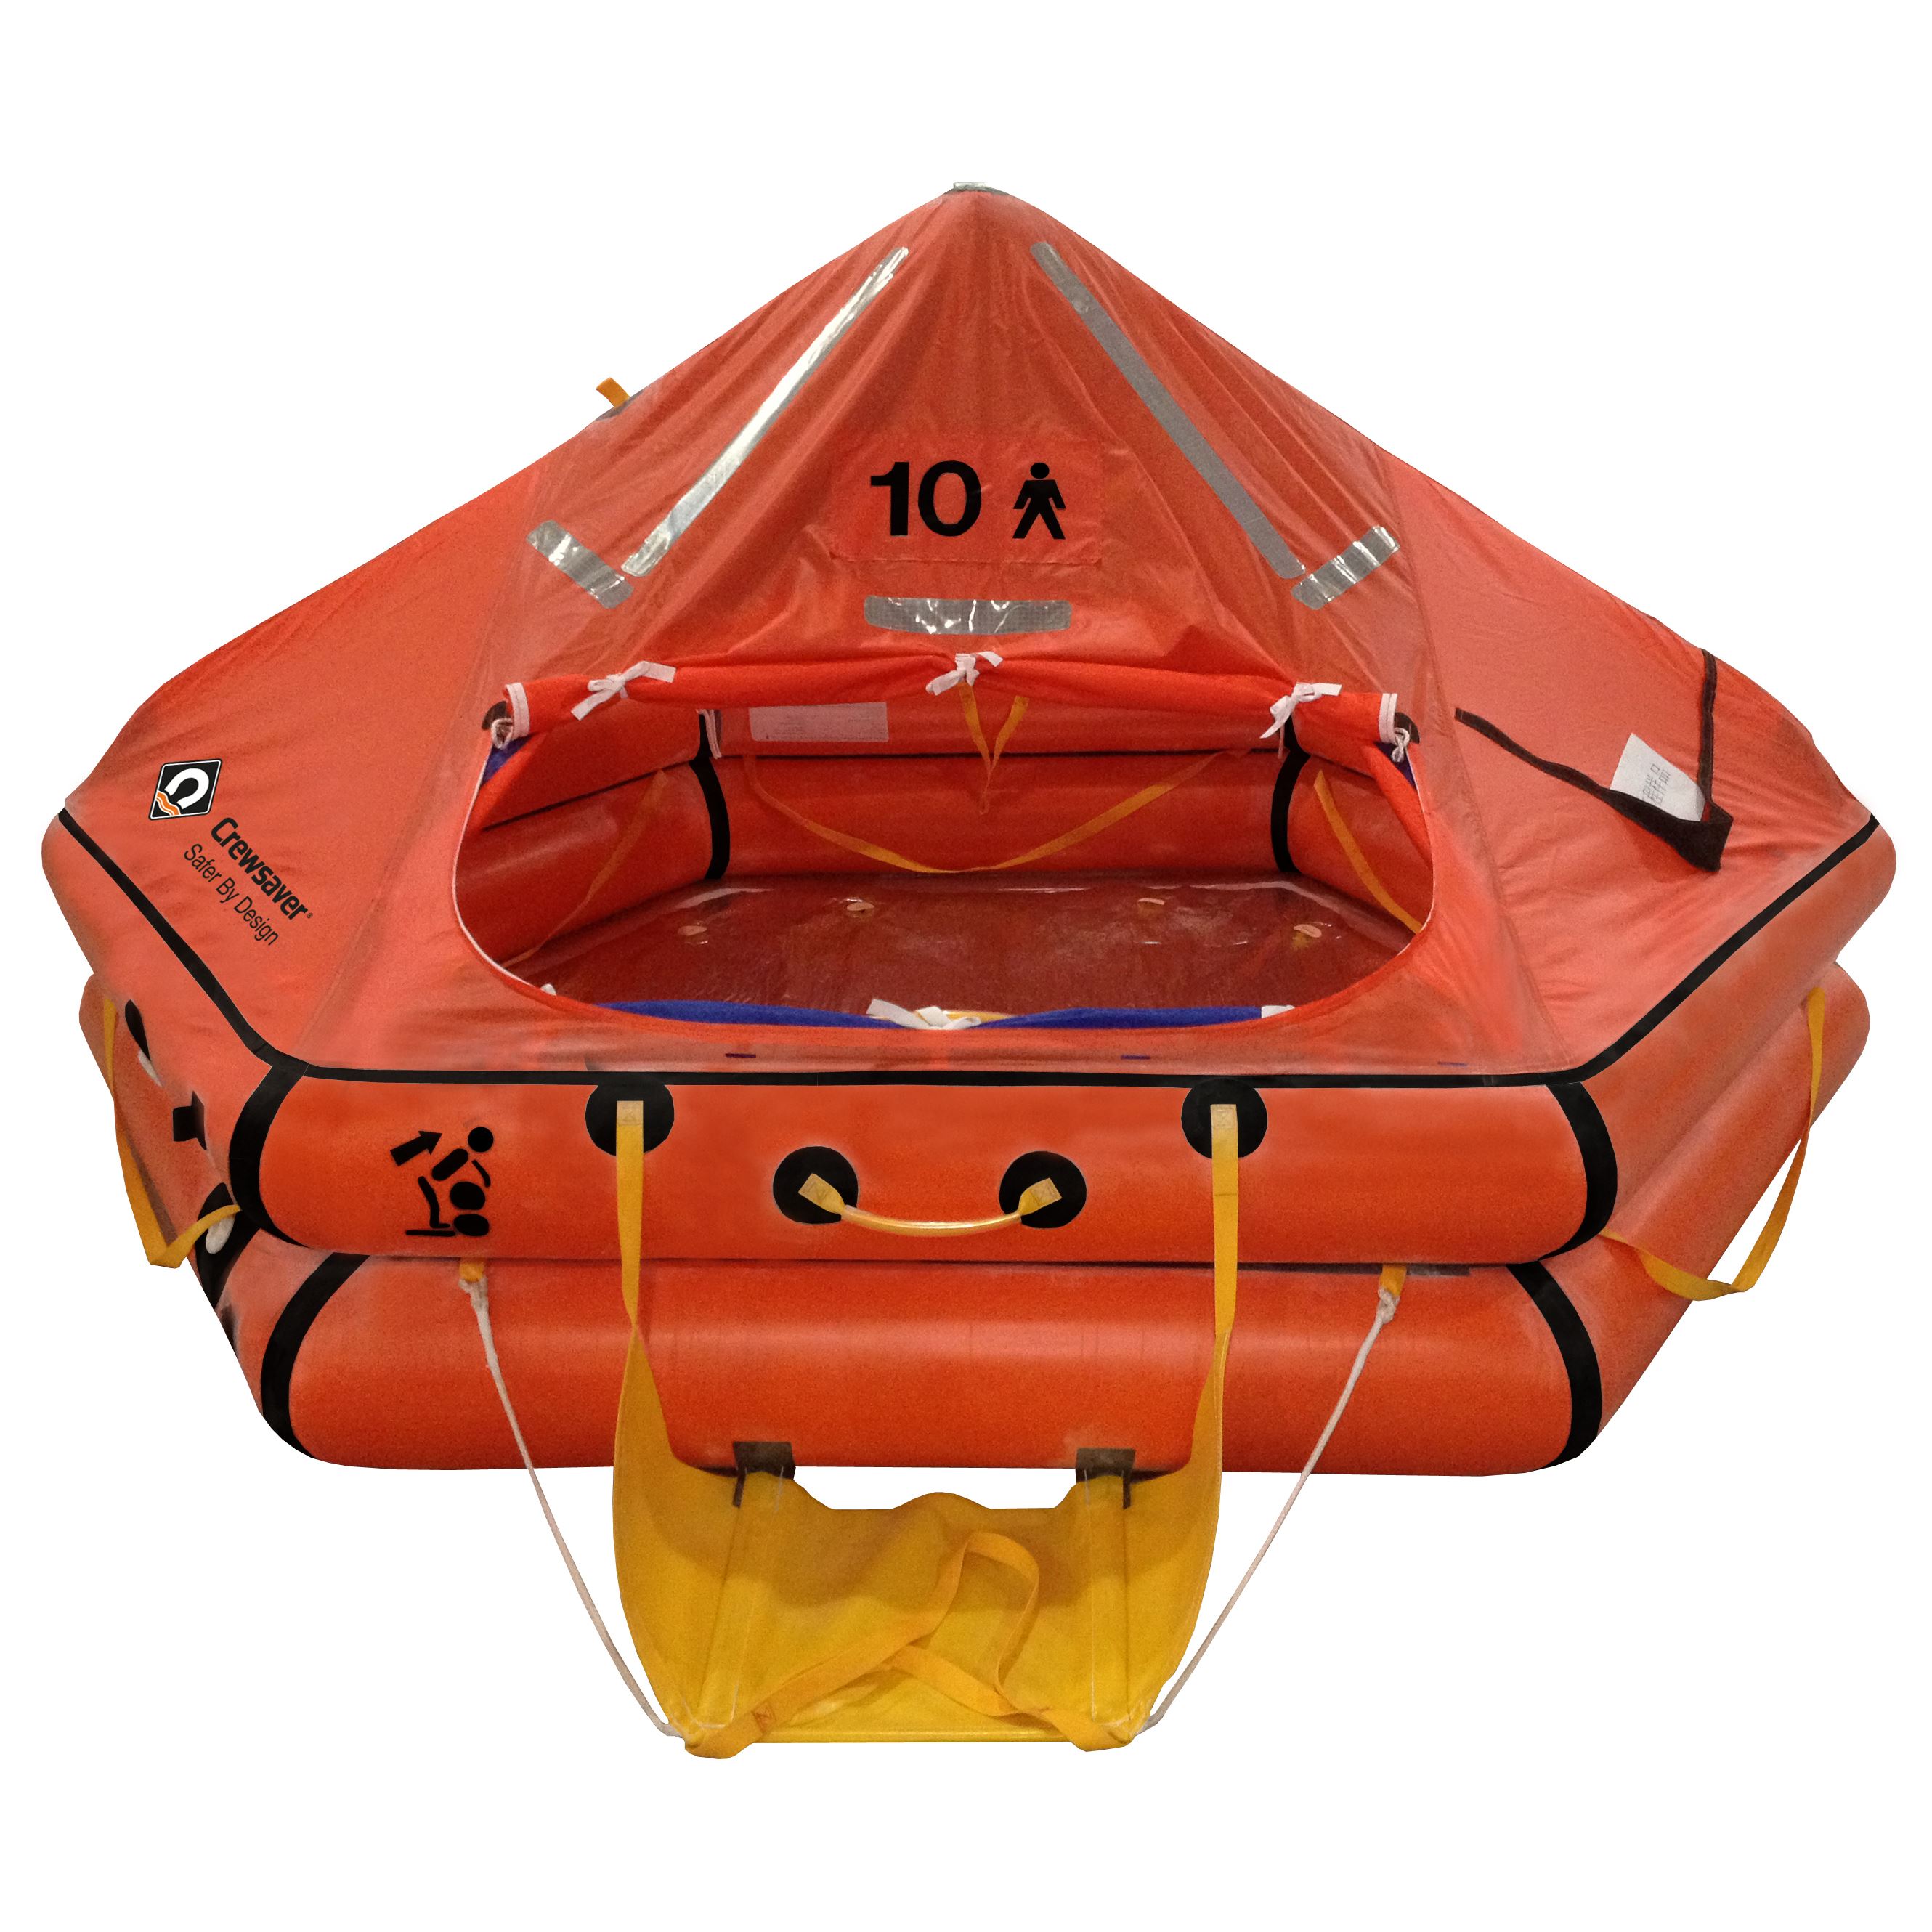 Как называются надувные плоты шлюпки. Плот спасательный надувной ПСН-10. Плот спасательный надувной ПСН-6. Плот спасательный r0372a101. Плот спасательный надувной ПСН-20.